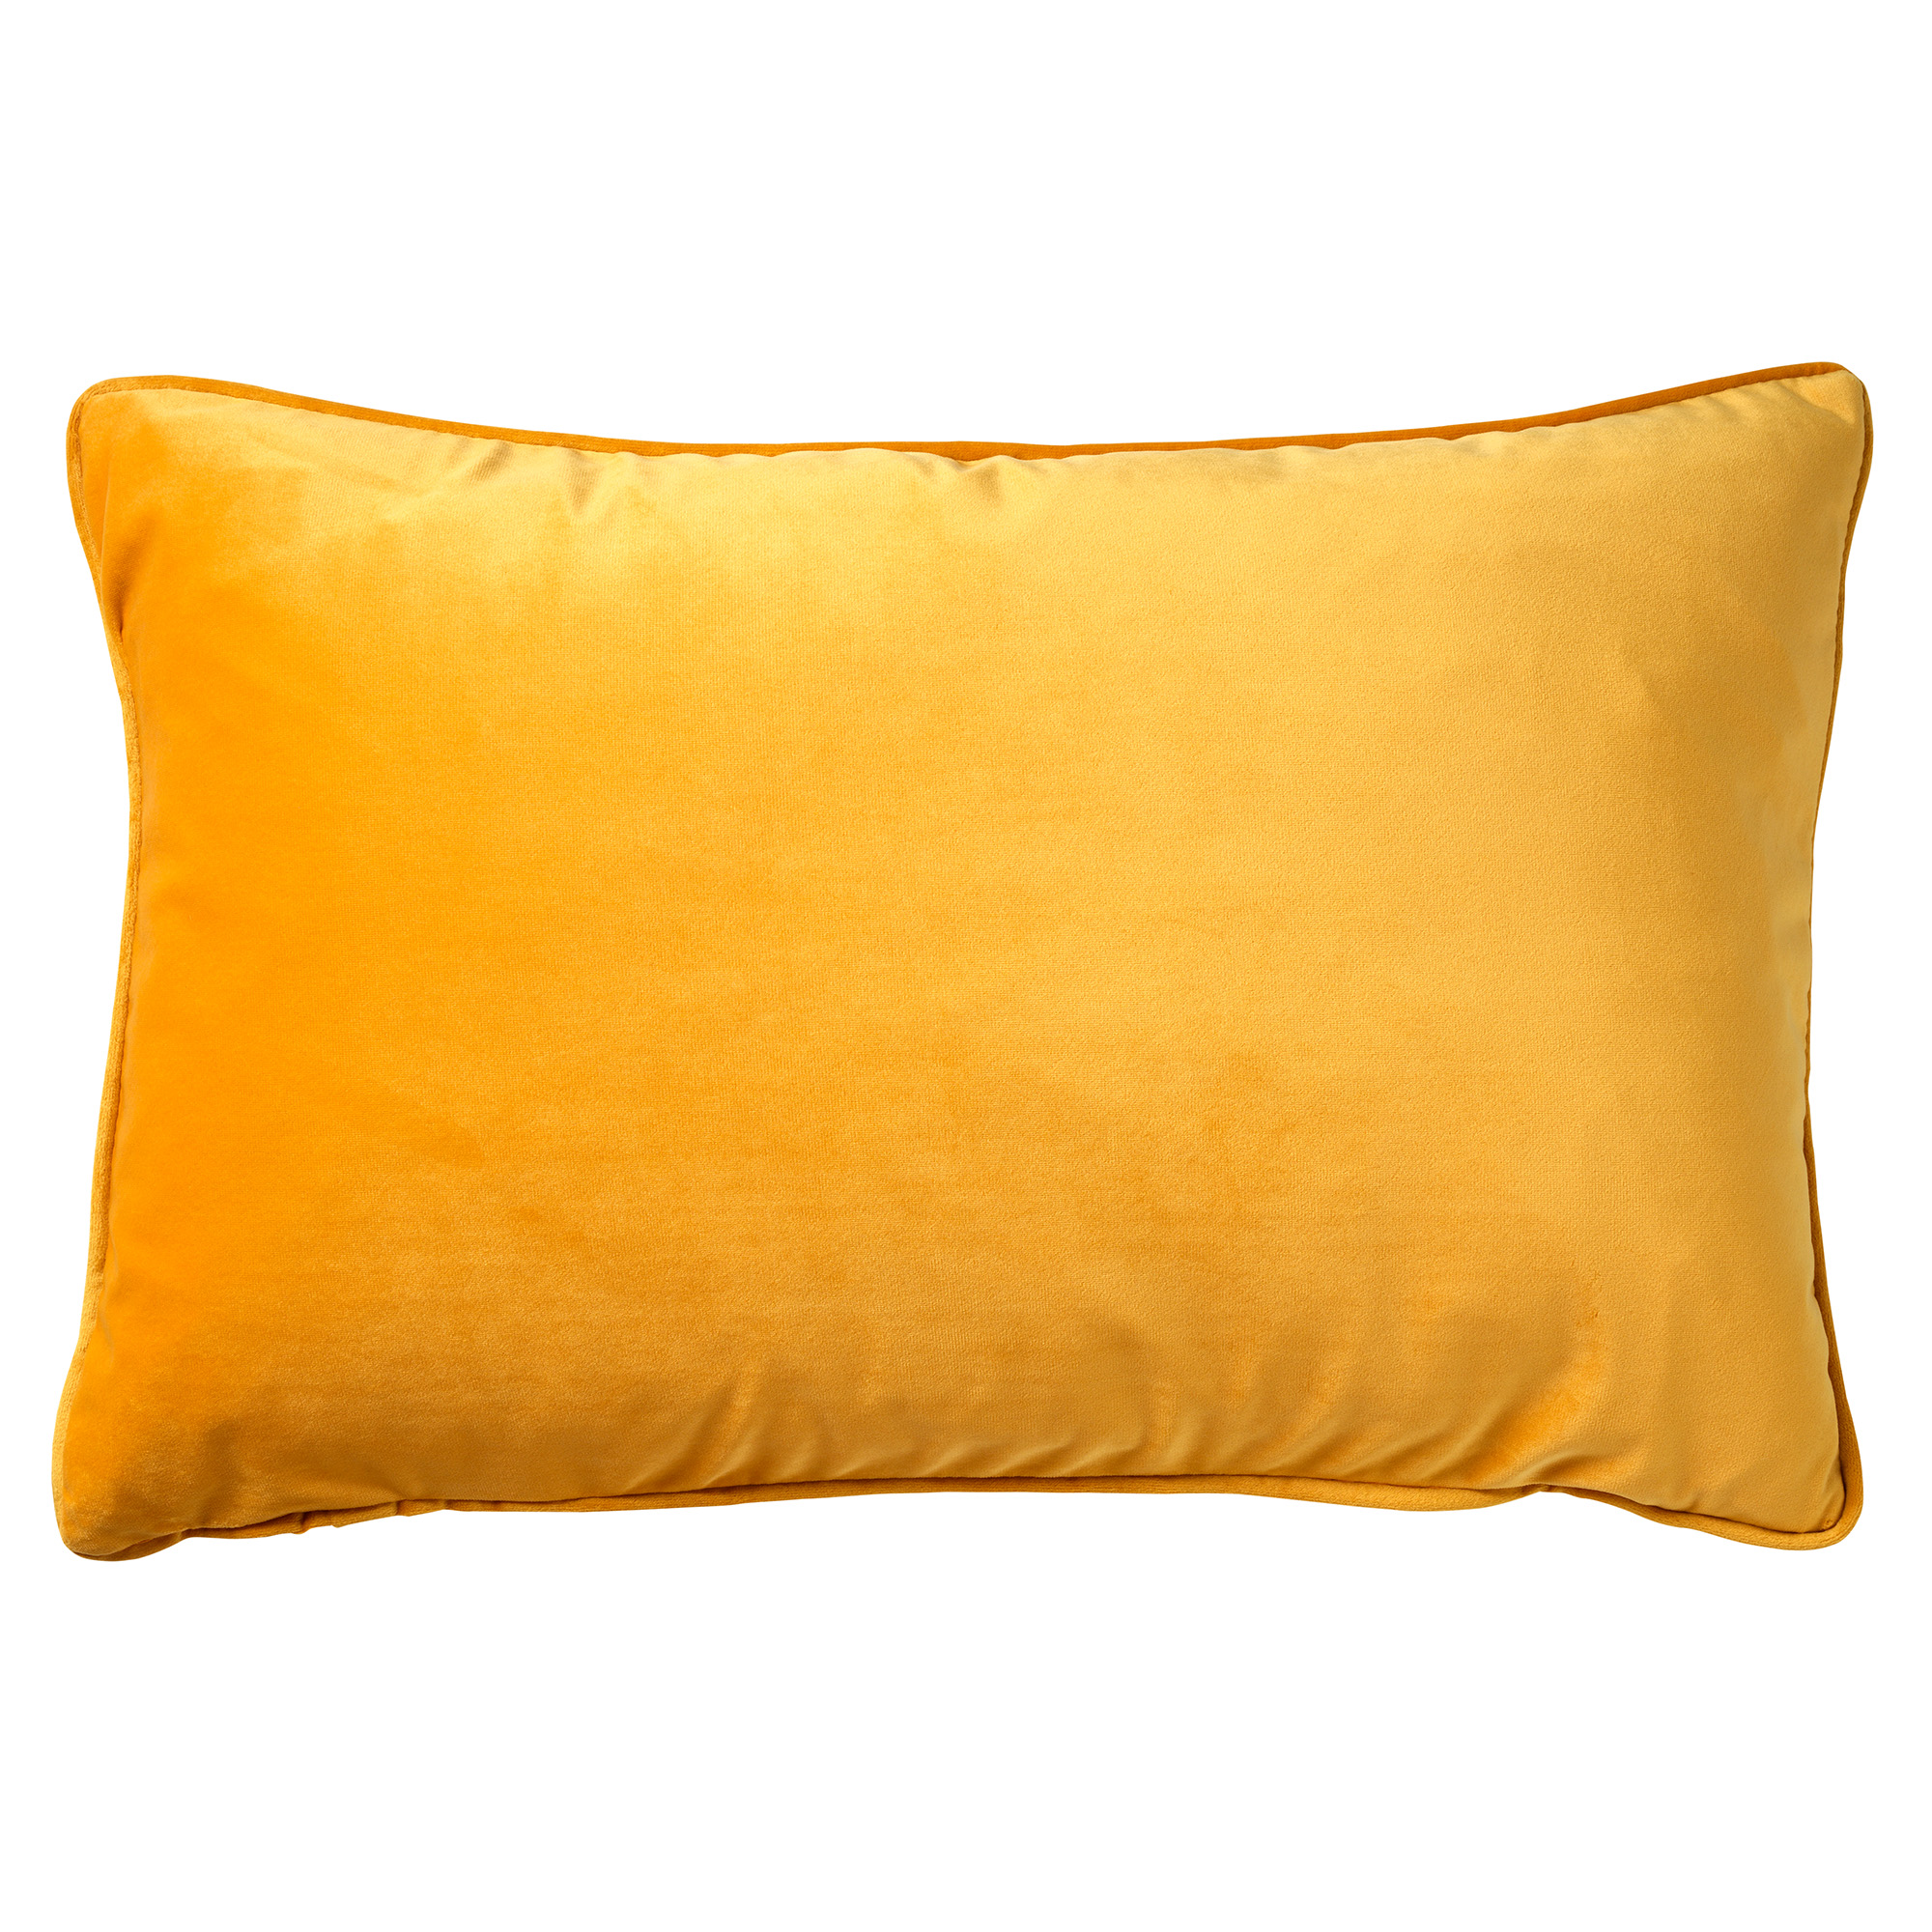 FINN - Cushion cover velvet 40x60 cm - Golden Glow - yellow-ochre